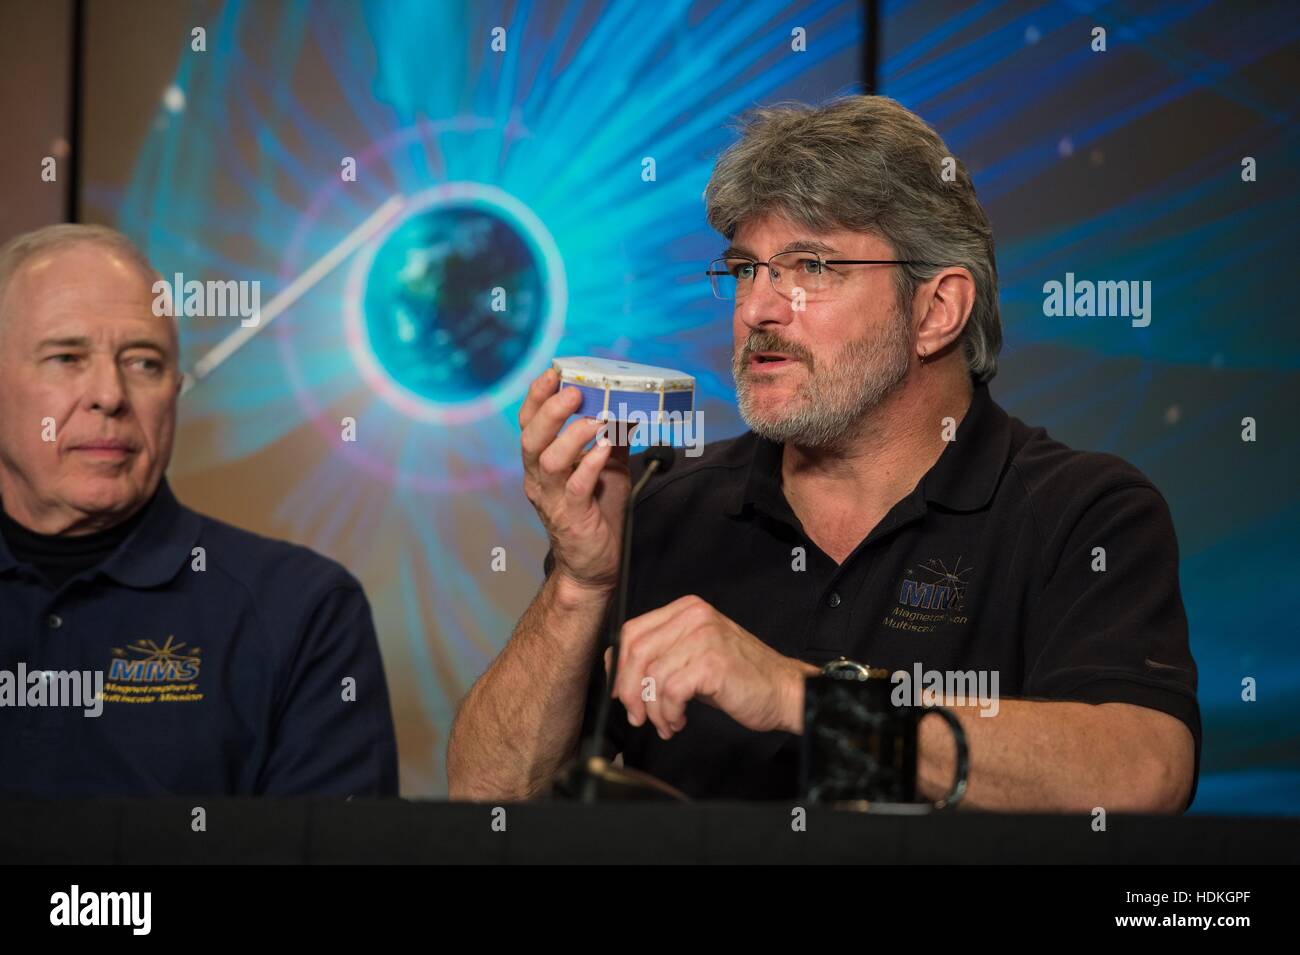 Multi-échelle de la magnétosphère de la NASA (MMS) gestionnaire de projet mission Craig Tooley parle lors d'une réunion d'information sur le prochain lancement MMS au quartier général de la NASA le 26 février 2015 à Washington, DC. Banque D'Images